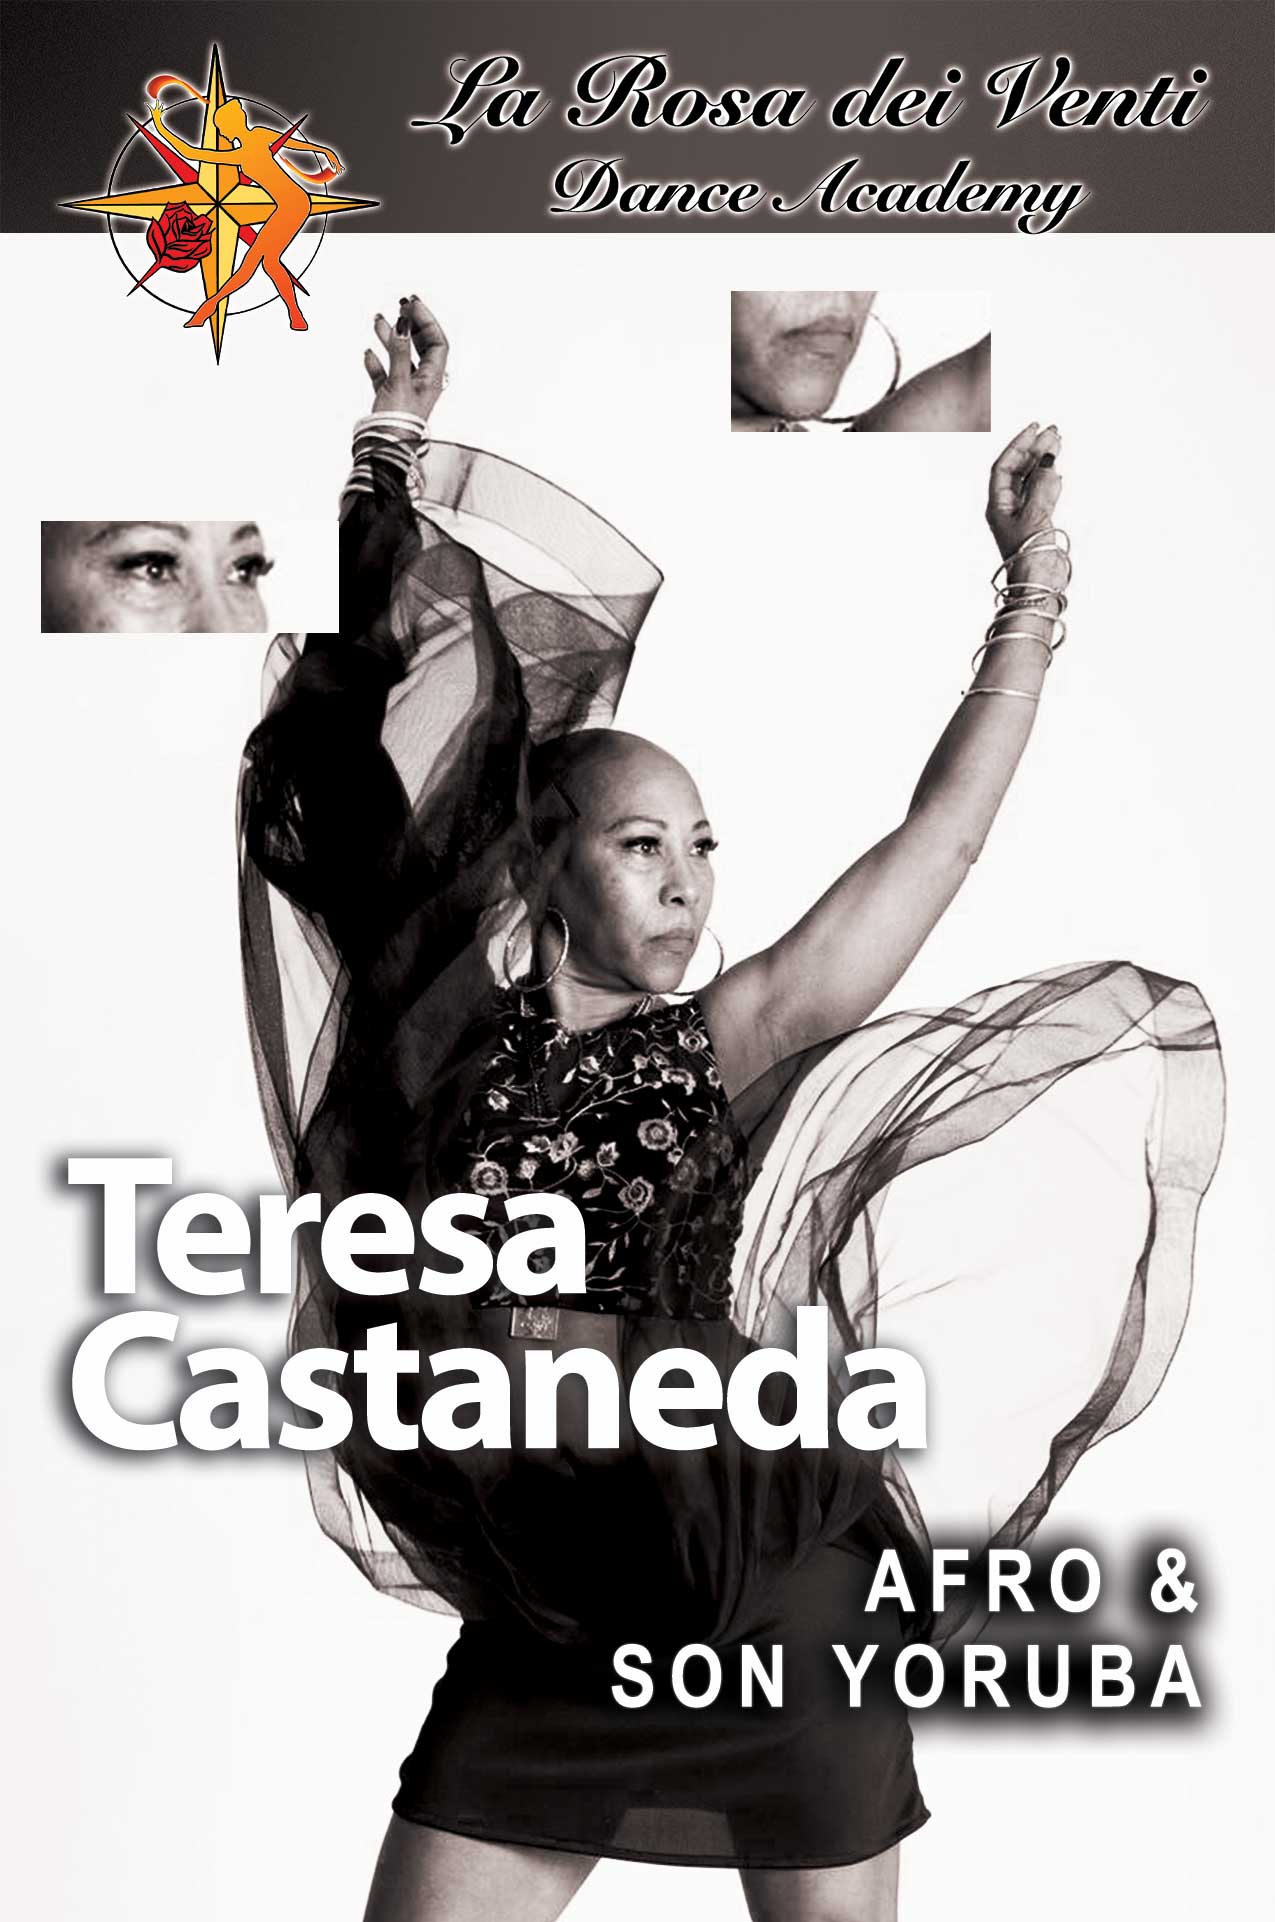 Teresa Castaneda Afro & Son Yoruba La Rosa dei Venti Dance Accademy